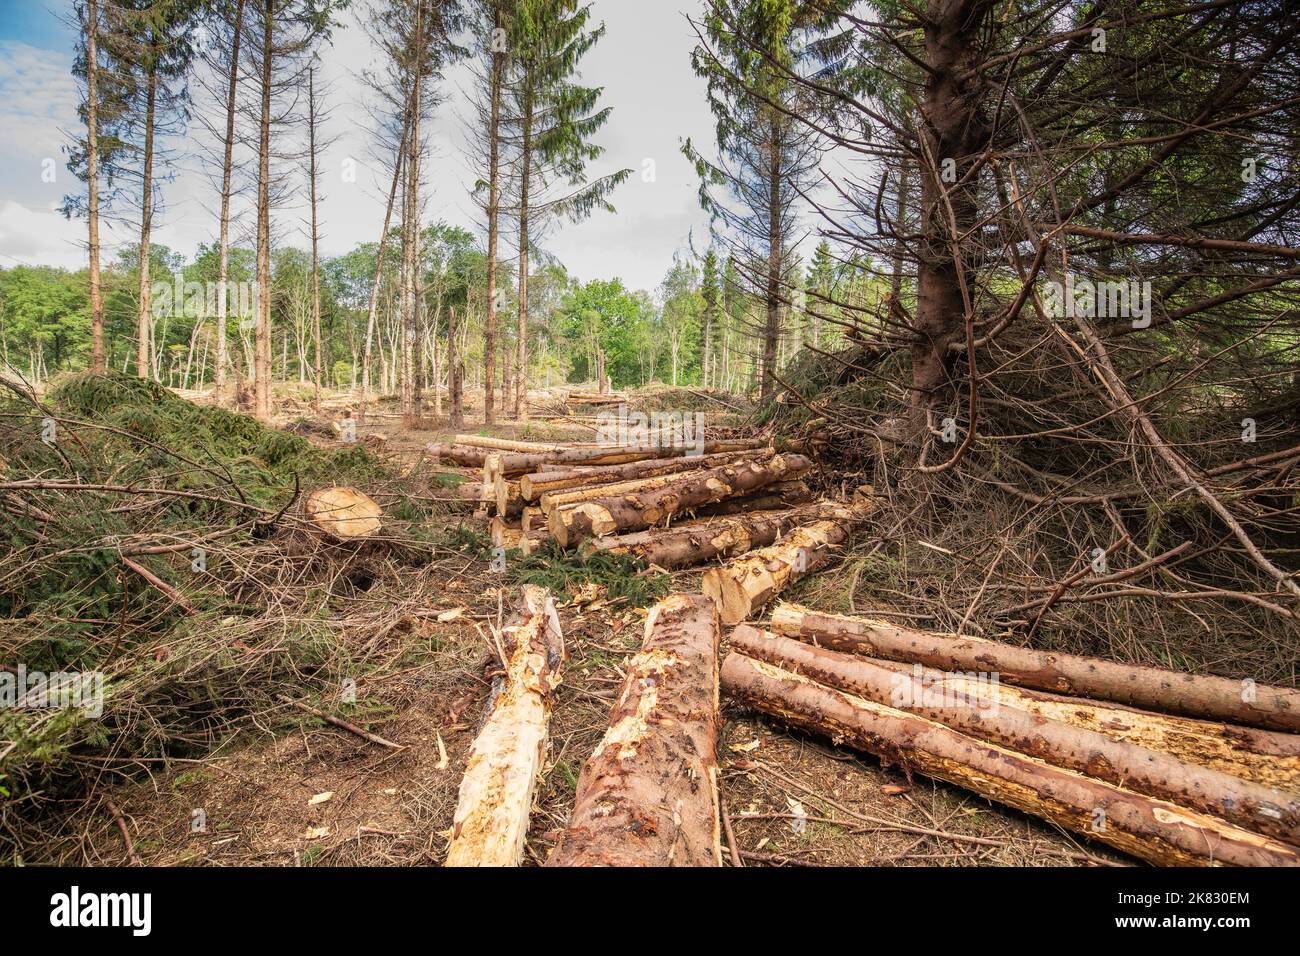 Panoramica di una foresta di abete rosso distrutto dalla tempesta invernale UNICE, causando deforestazione con danni ambientali sulla tenuta Hoogveen con tronchi impilati Foto Stock